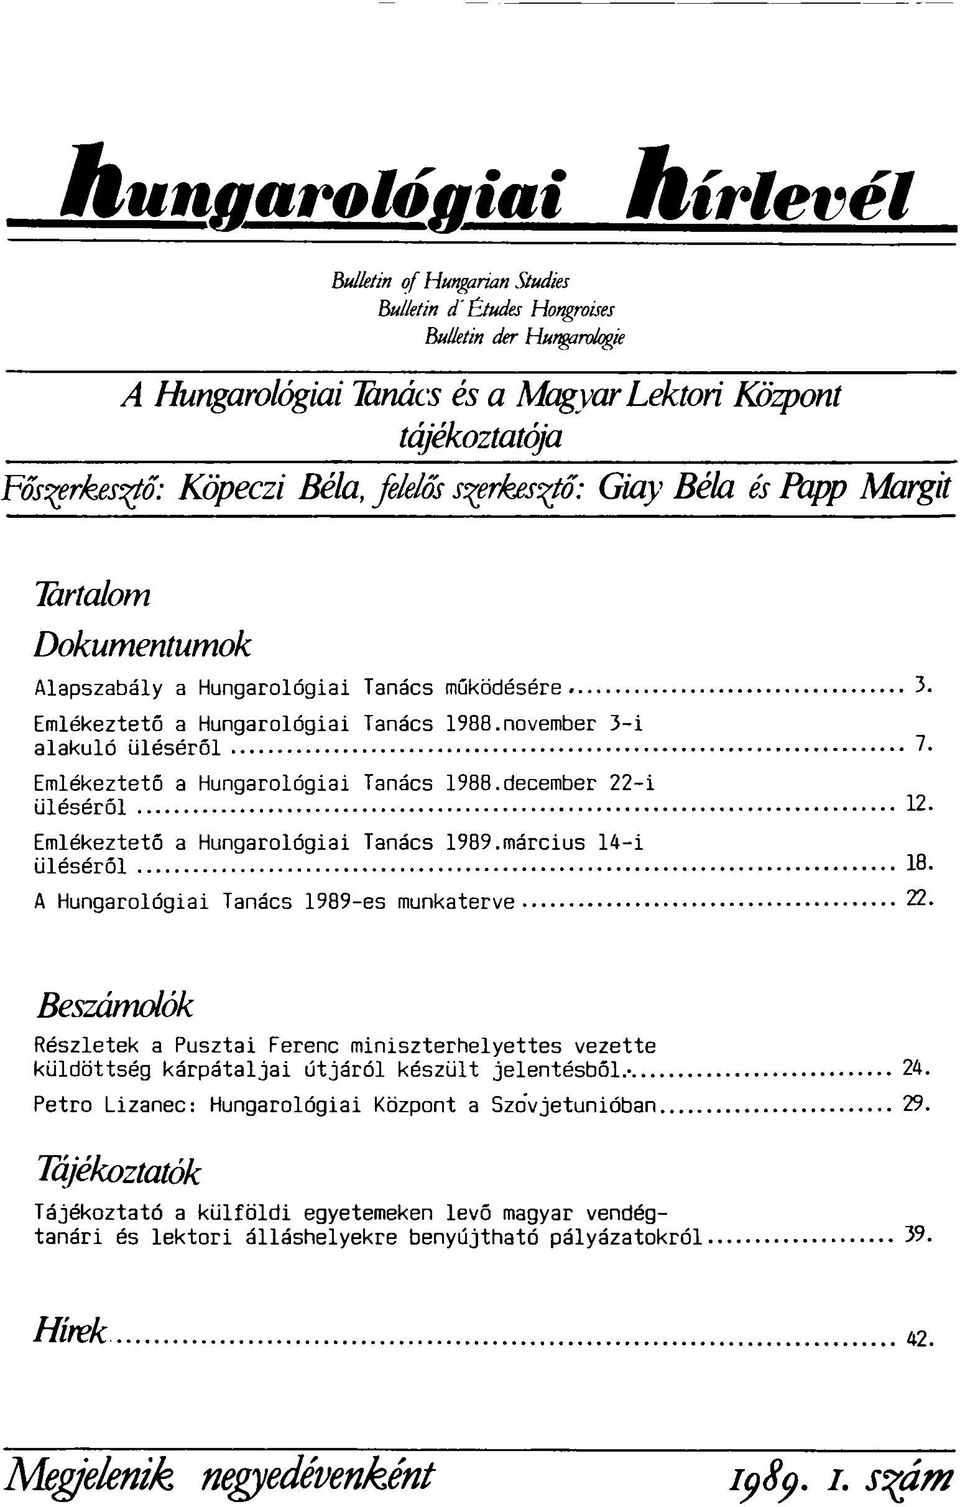 Emlékeztető a Hungarológiai Tanács 1988.december 22-i üléséről 12. Emlékeztető a Hungarológiai Tanács 1989.március 14-i üléséről 18- A Hungarológiai Tanács 1989-es munkaterve 22.